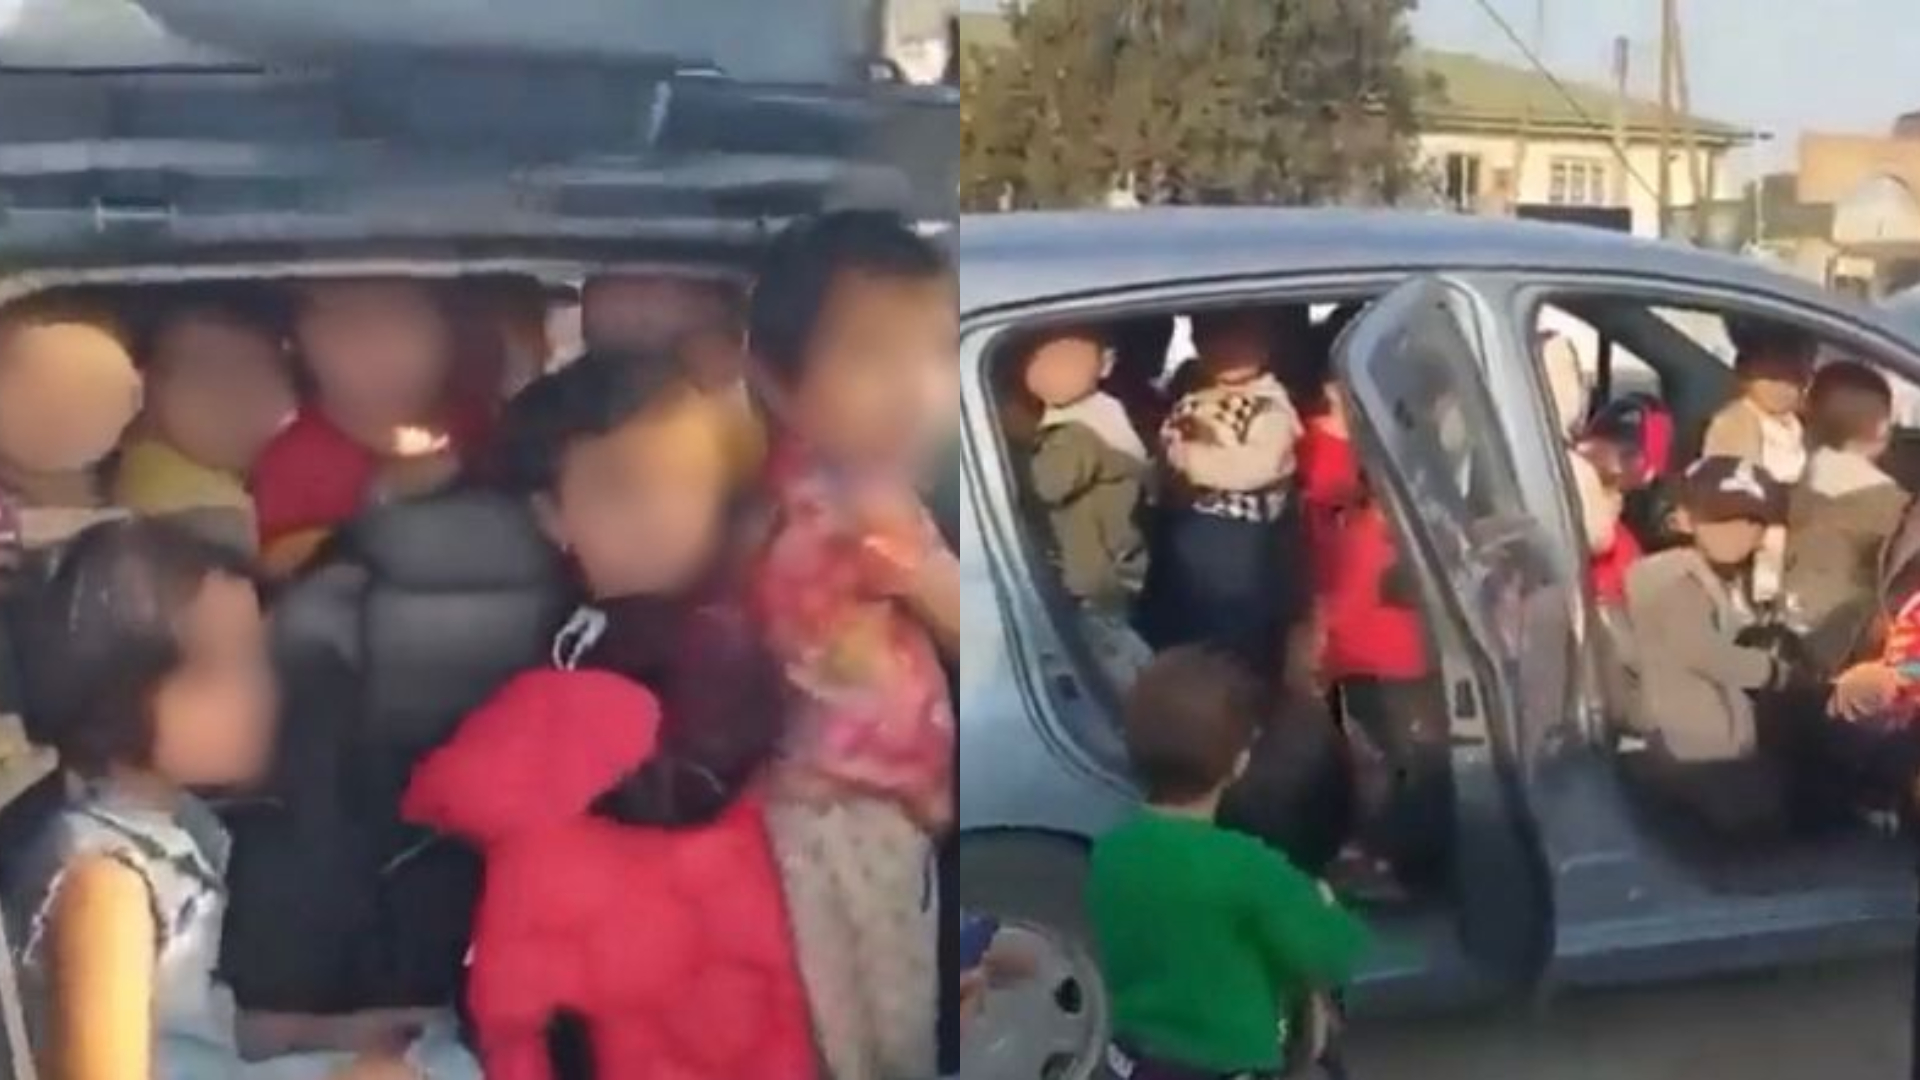 Vídeo de professora sendo presa por carregar 25 crianças em carro, no Uzbequistão, viraliza e mulher explica atitude; assista